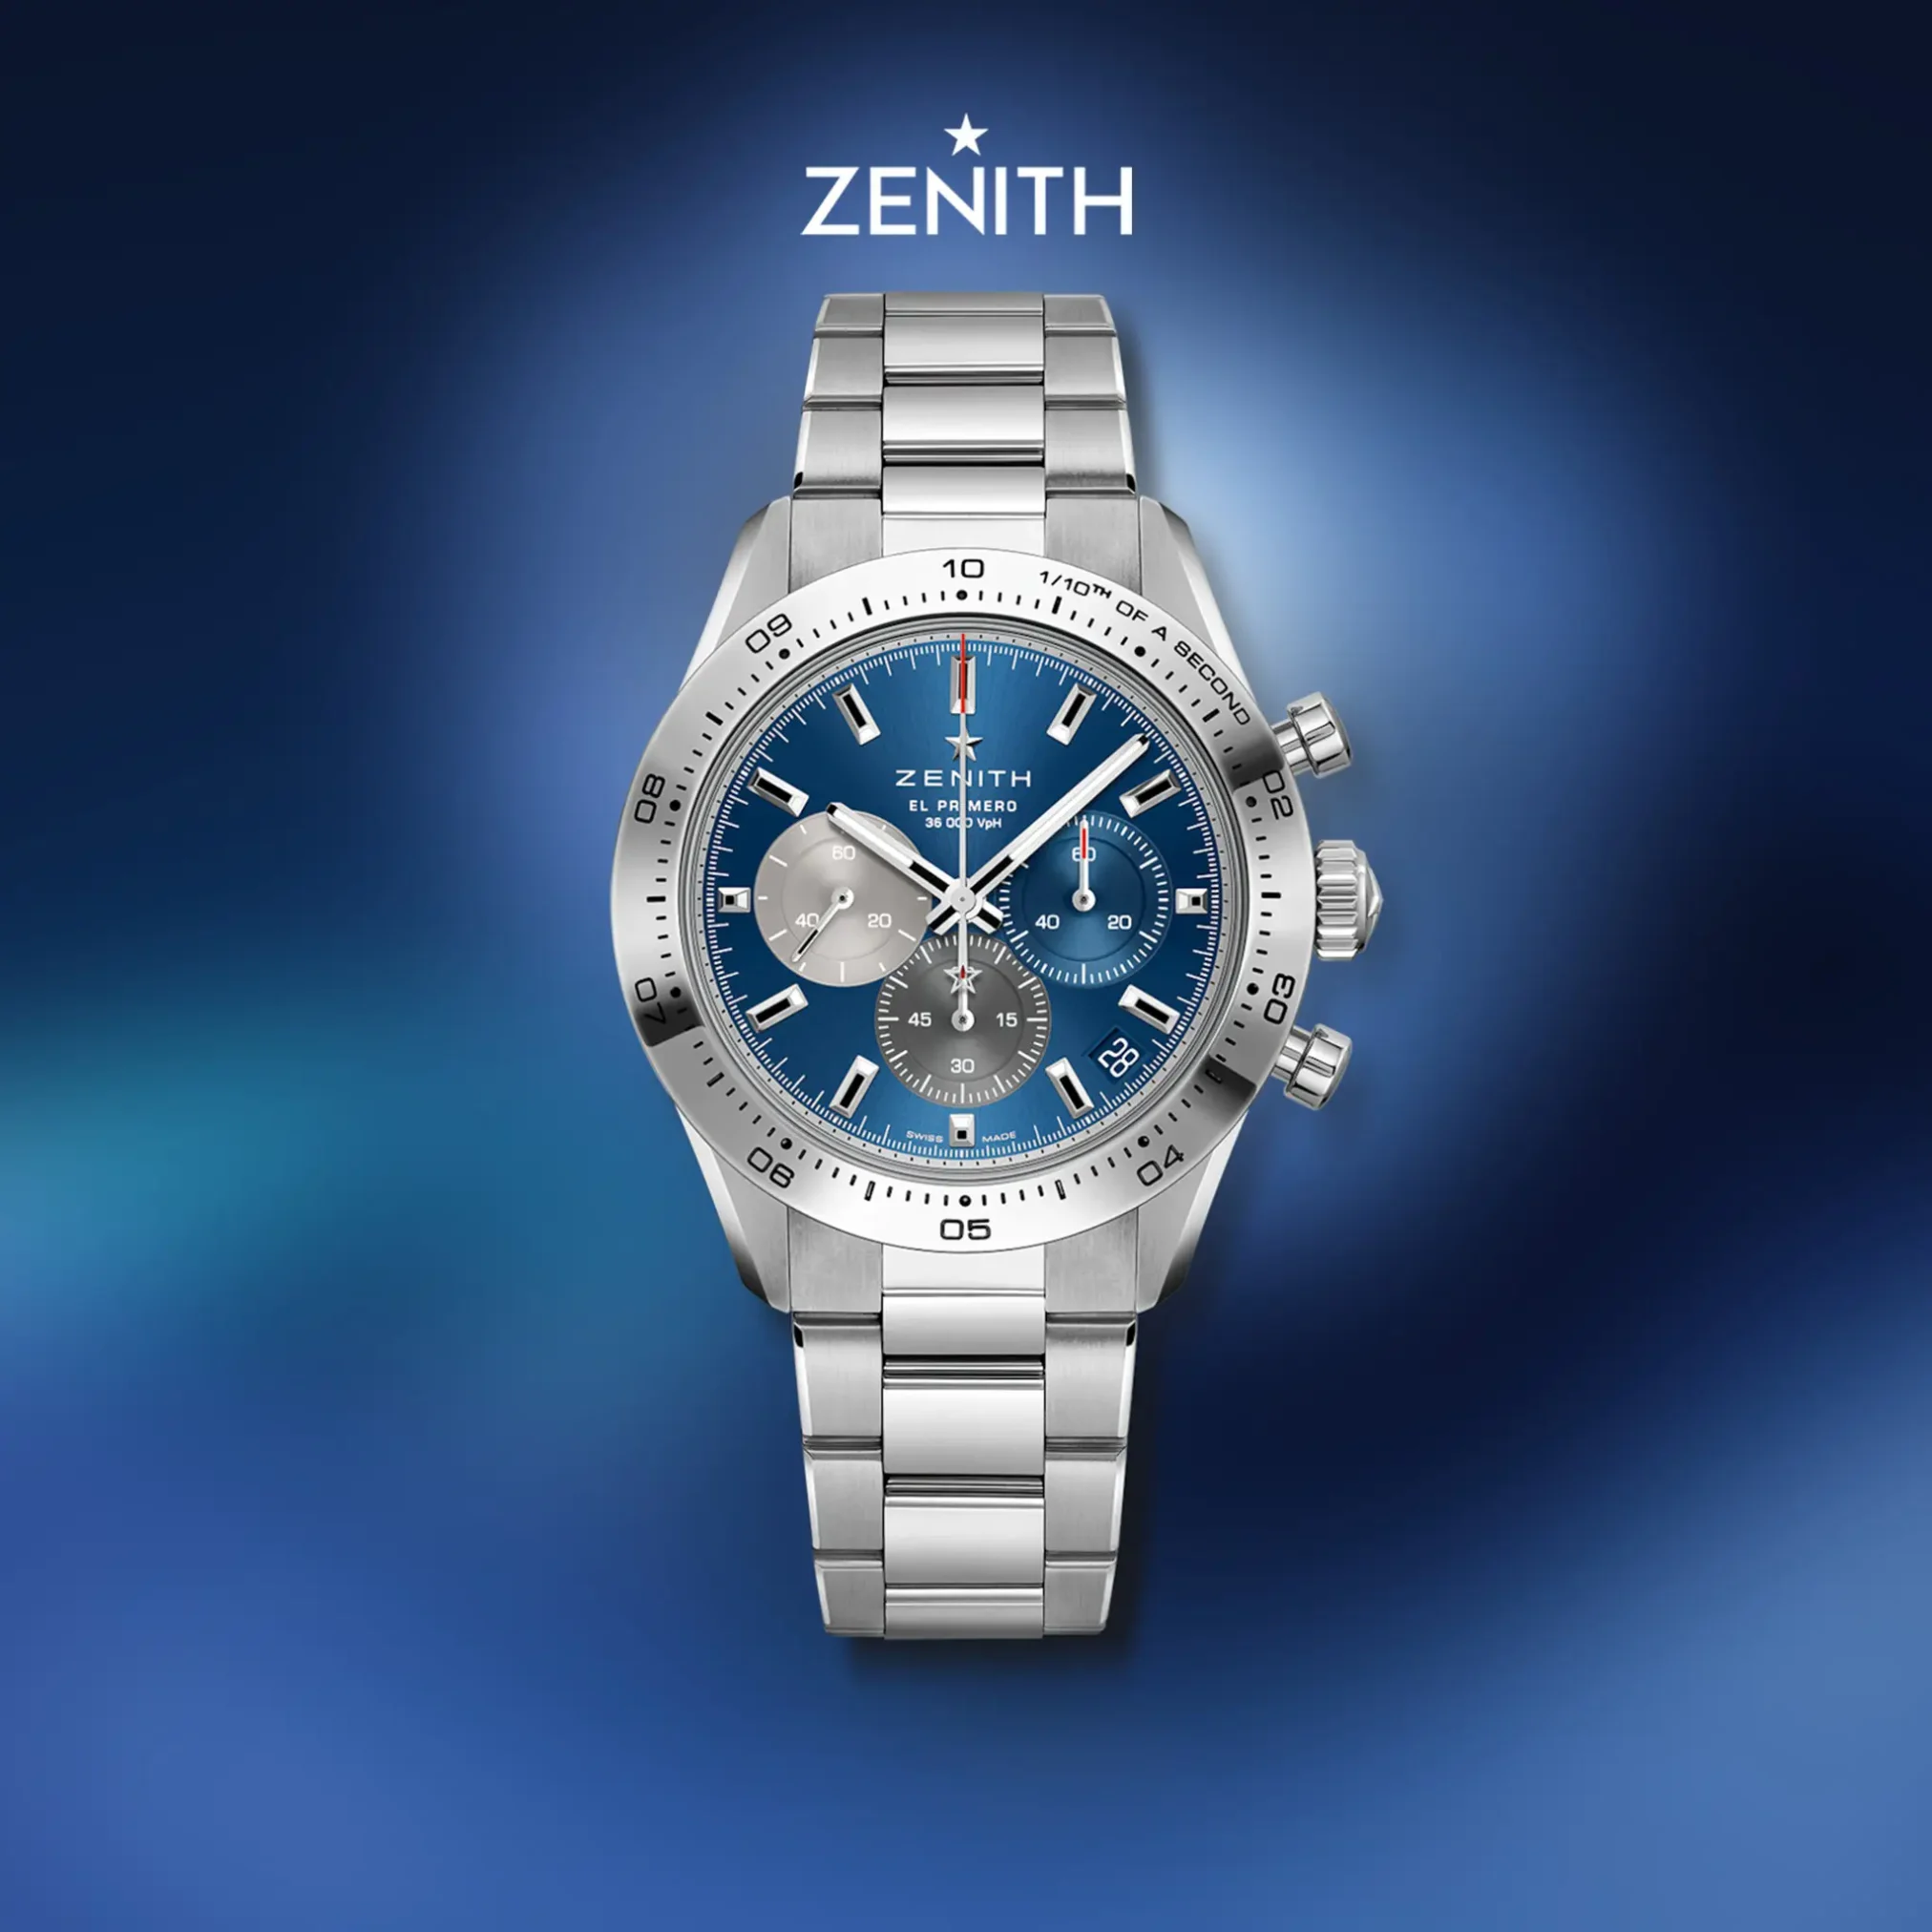 Đồng hồ Zenith Chronomaster Sport 03.3114.3600/51.M3100 mặt số màu xanh. Dây đeo bằng thép. Thân vỏ bằng thép.